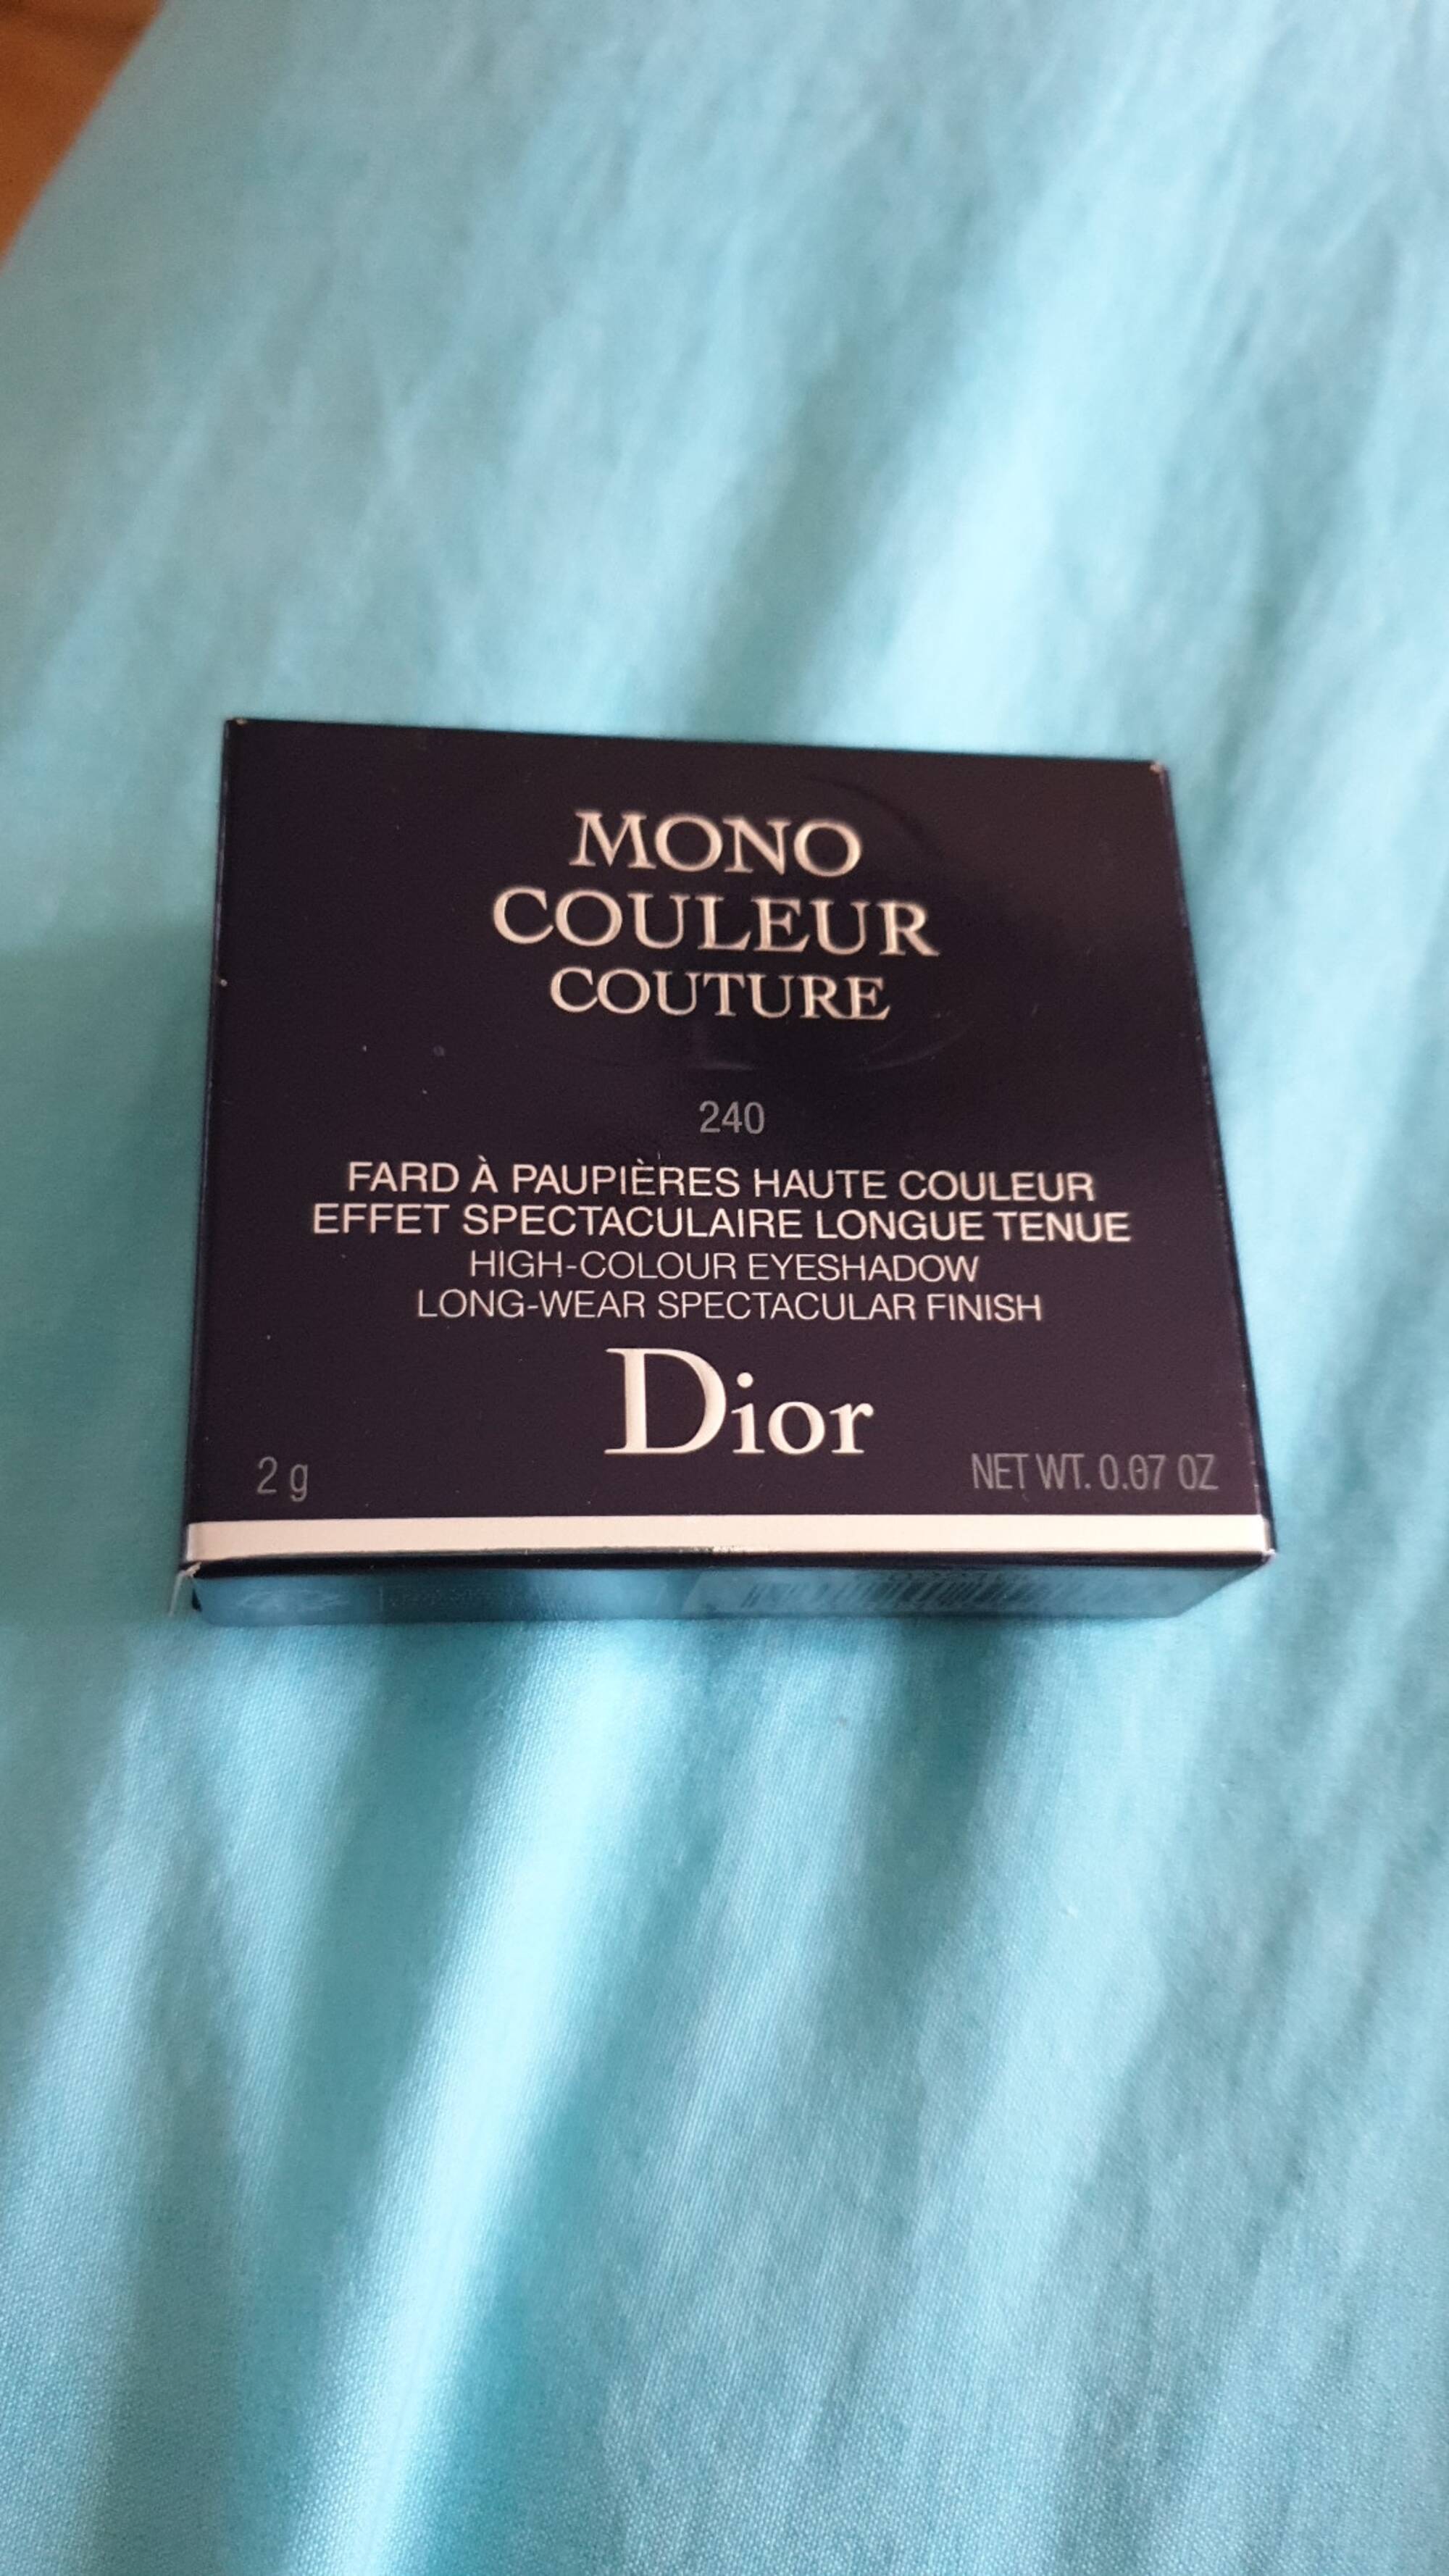 DIOR - Mono couleur couture - Fard à paupières haute couleur